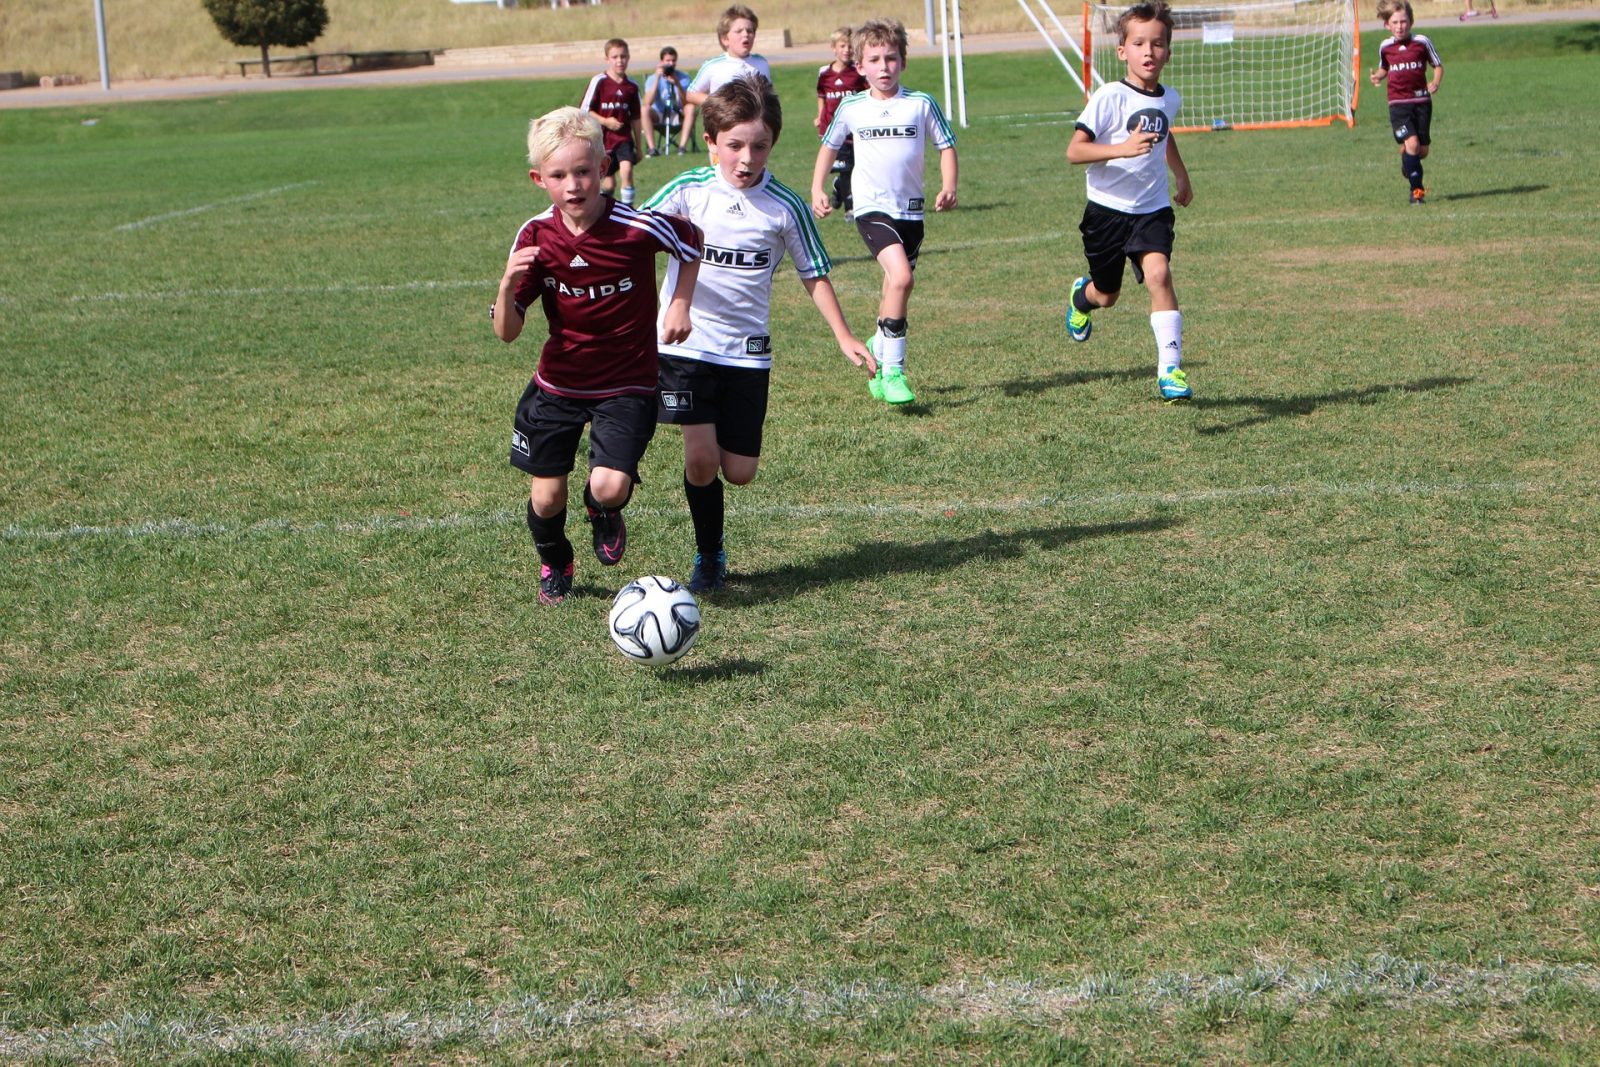 A new youth soccer season kicks off